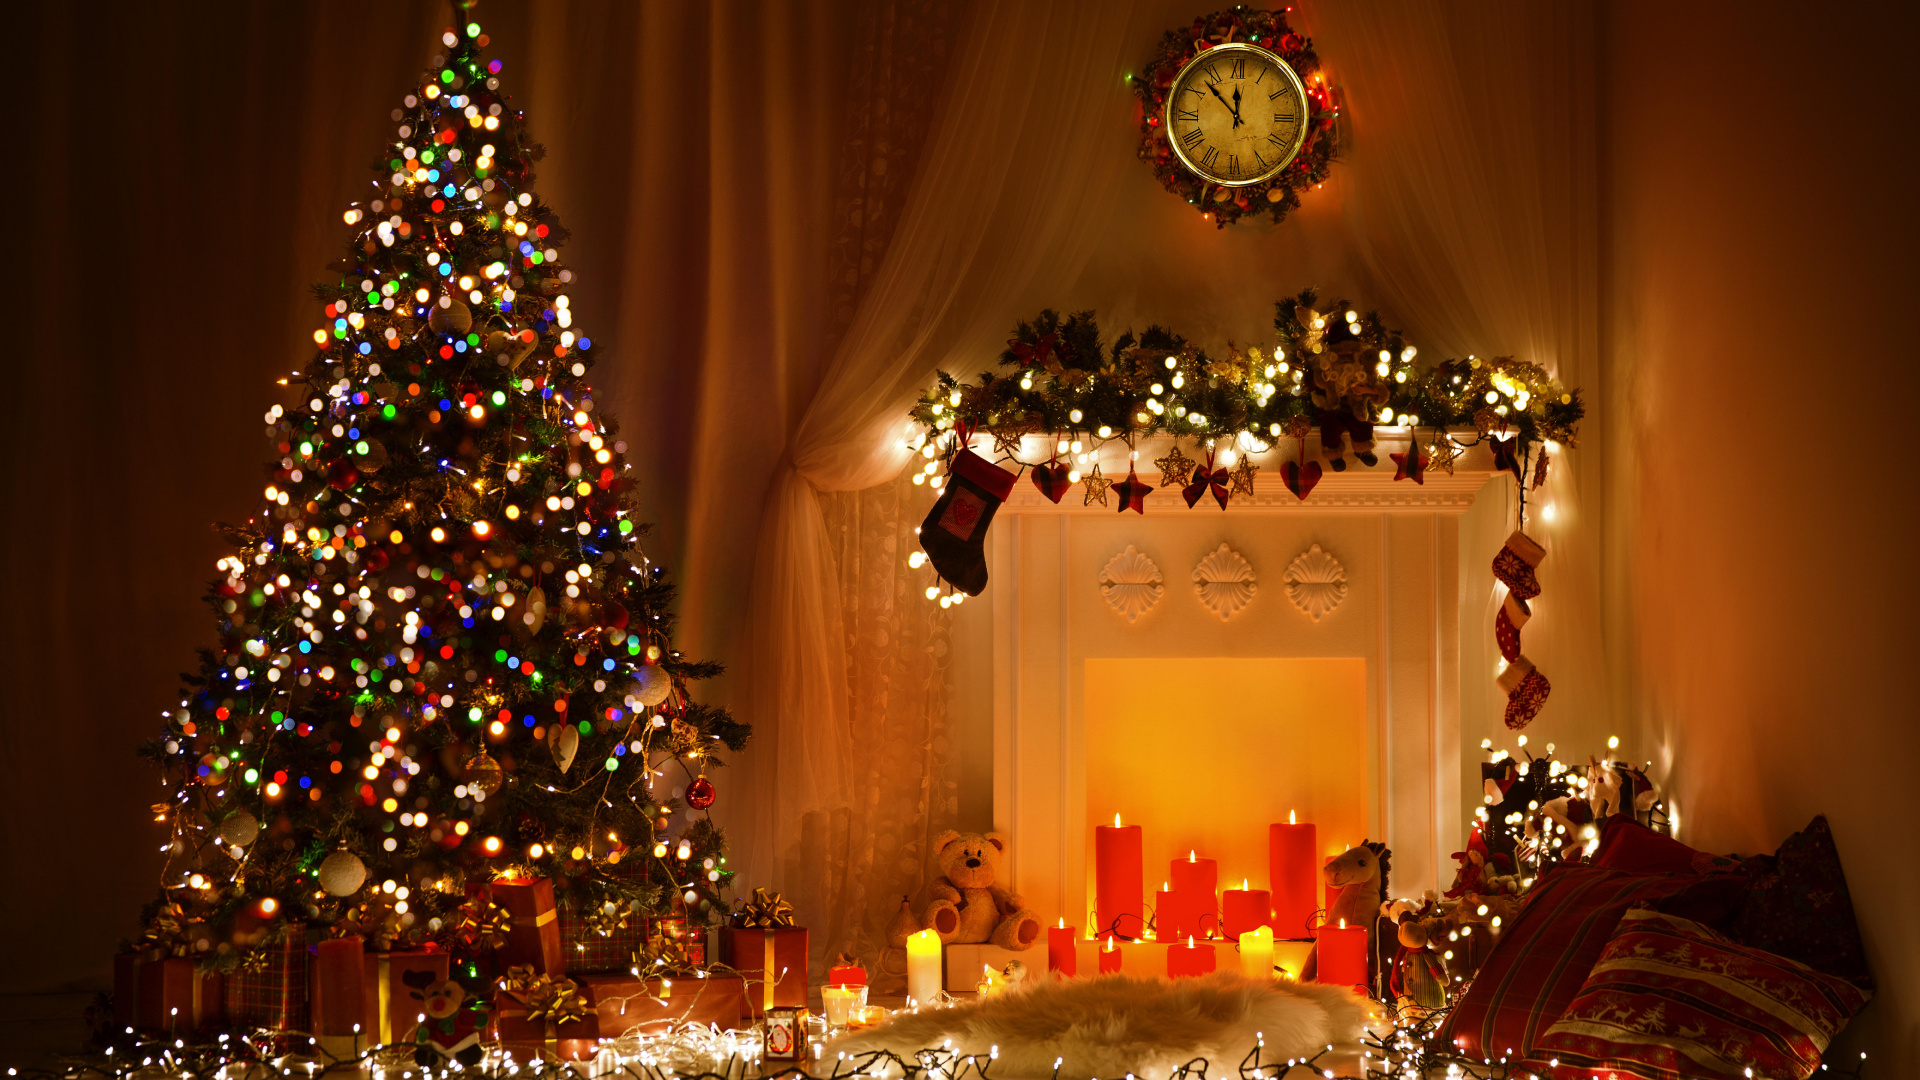 Weihnachten, Weihnachtsbaum, Weihnachtsbeleuchtung, Weihnachtsdekoration, Christmas Ornament. Wallpaper in 1920x1080 Resolution